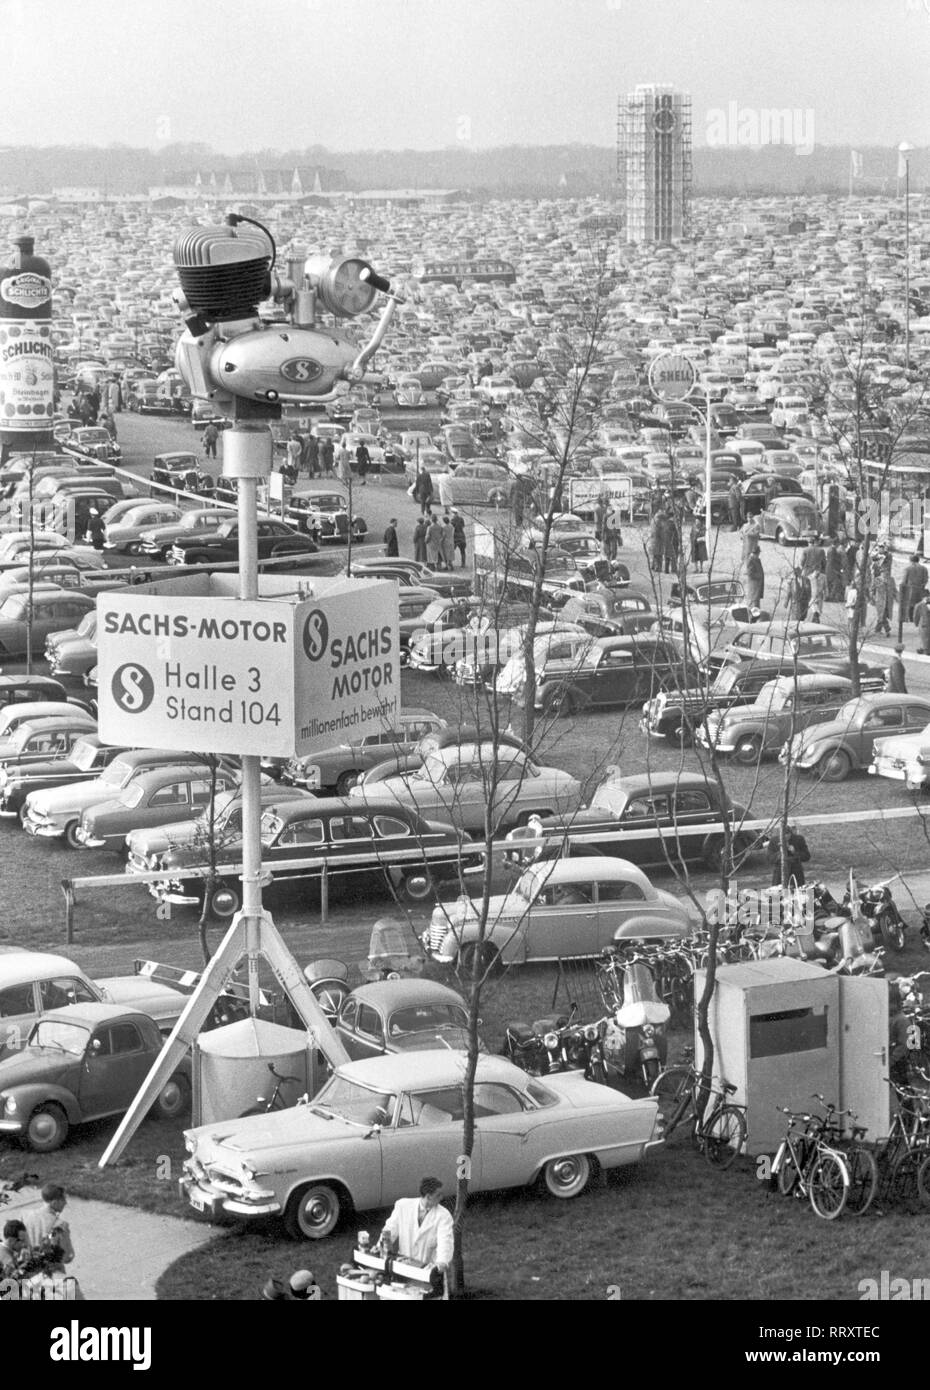 Germany - Deutschland: Deutsche Industriemesse 1956 in Hannover, Die interessantesten Autoformen Europas auf dem Parkplatz der Messe Hannover. Cars in a parking area at Hanover trade show. Stock Photo